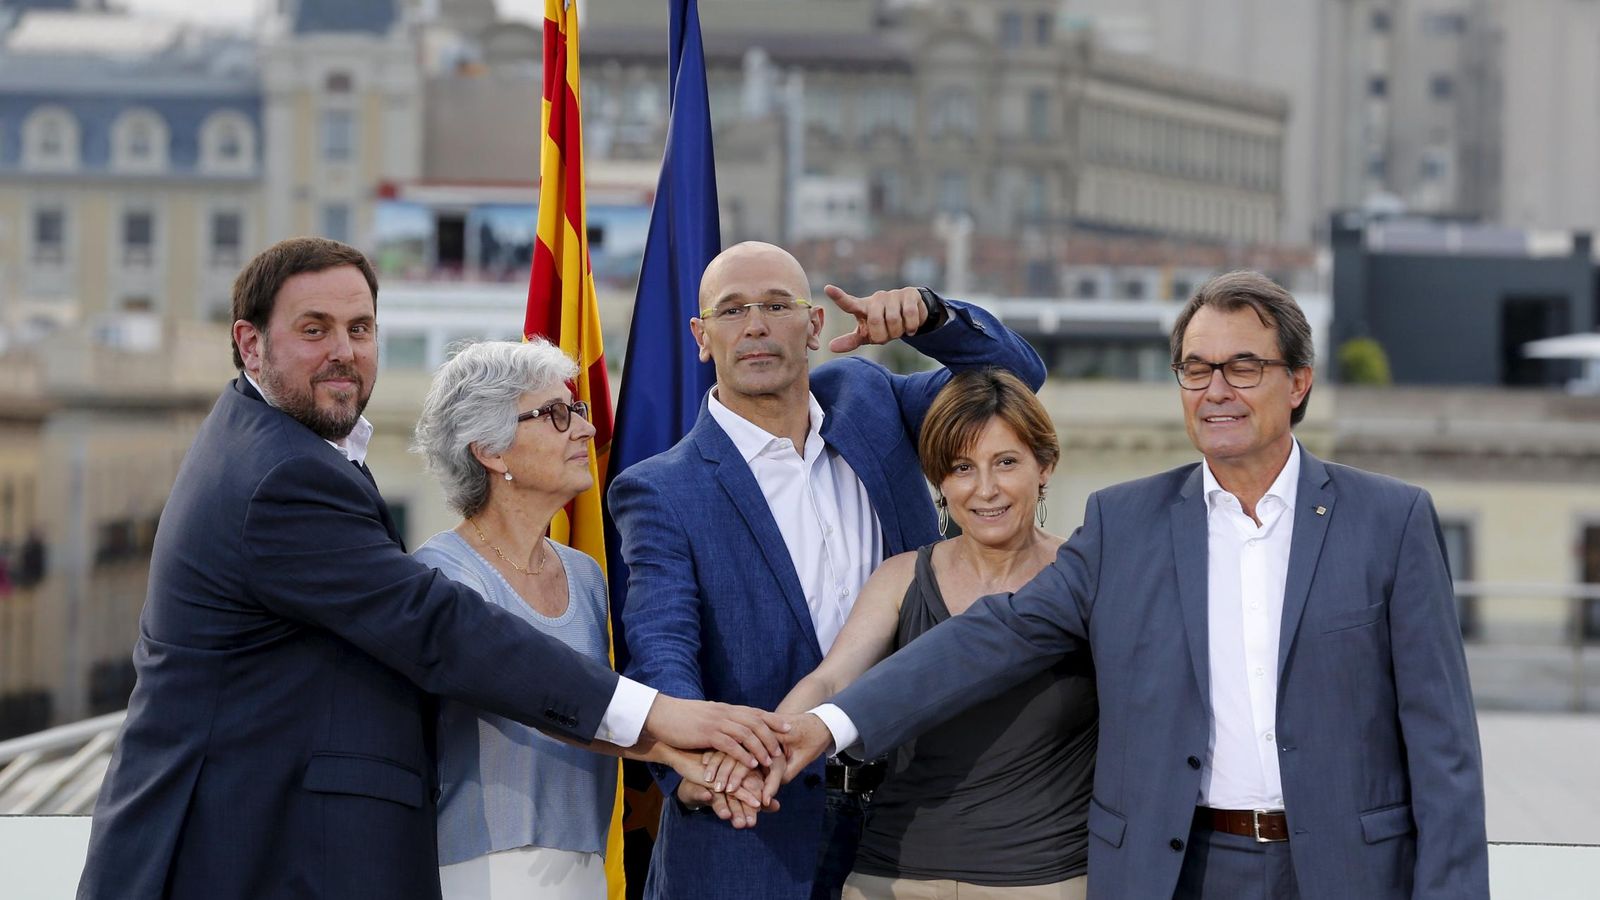 Foto: Oriol Junqueras y Artur Mas junto al resto de los cabezas de lista del Junts pel si. Raül Romeva, Carme Forcadell y Muriel Casals. (Reuters) 